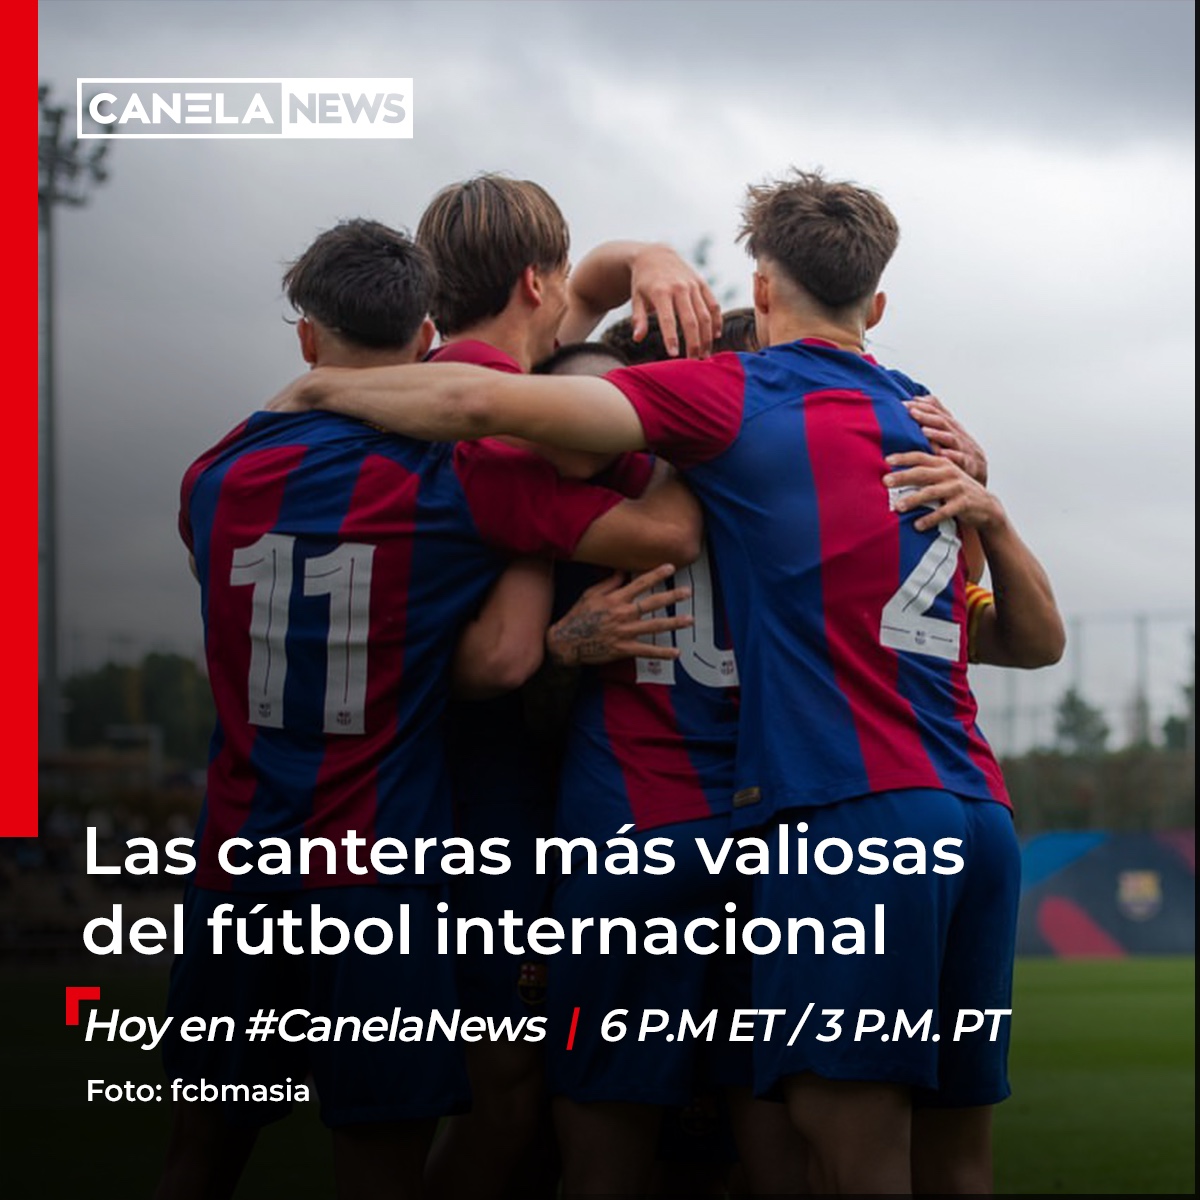 ¿Cuáles son las canteras más valiosas del fútbol internacional? Un adelanto: valen mucho 💰💰

Te contamos hoy en #CanelaNews
🔻
canela.tv